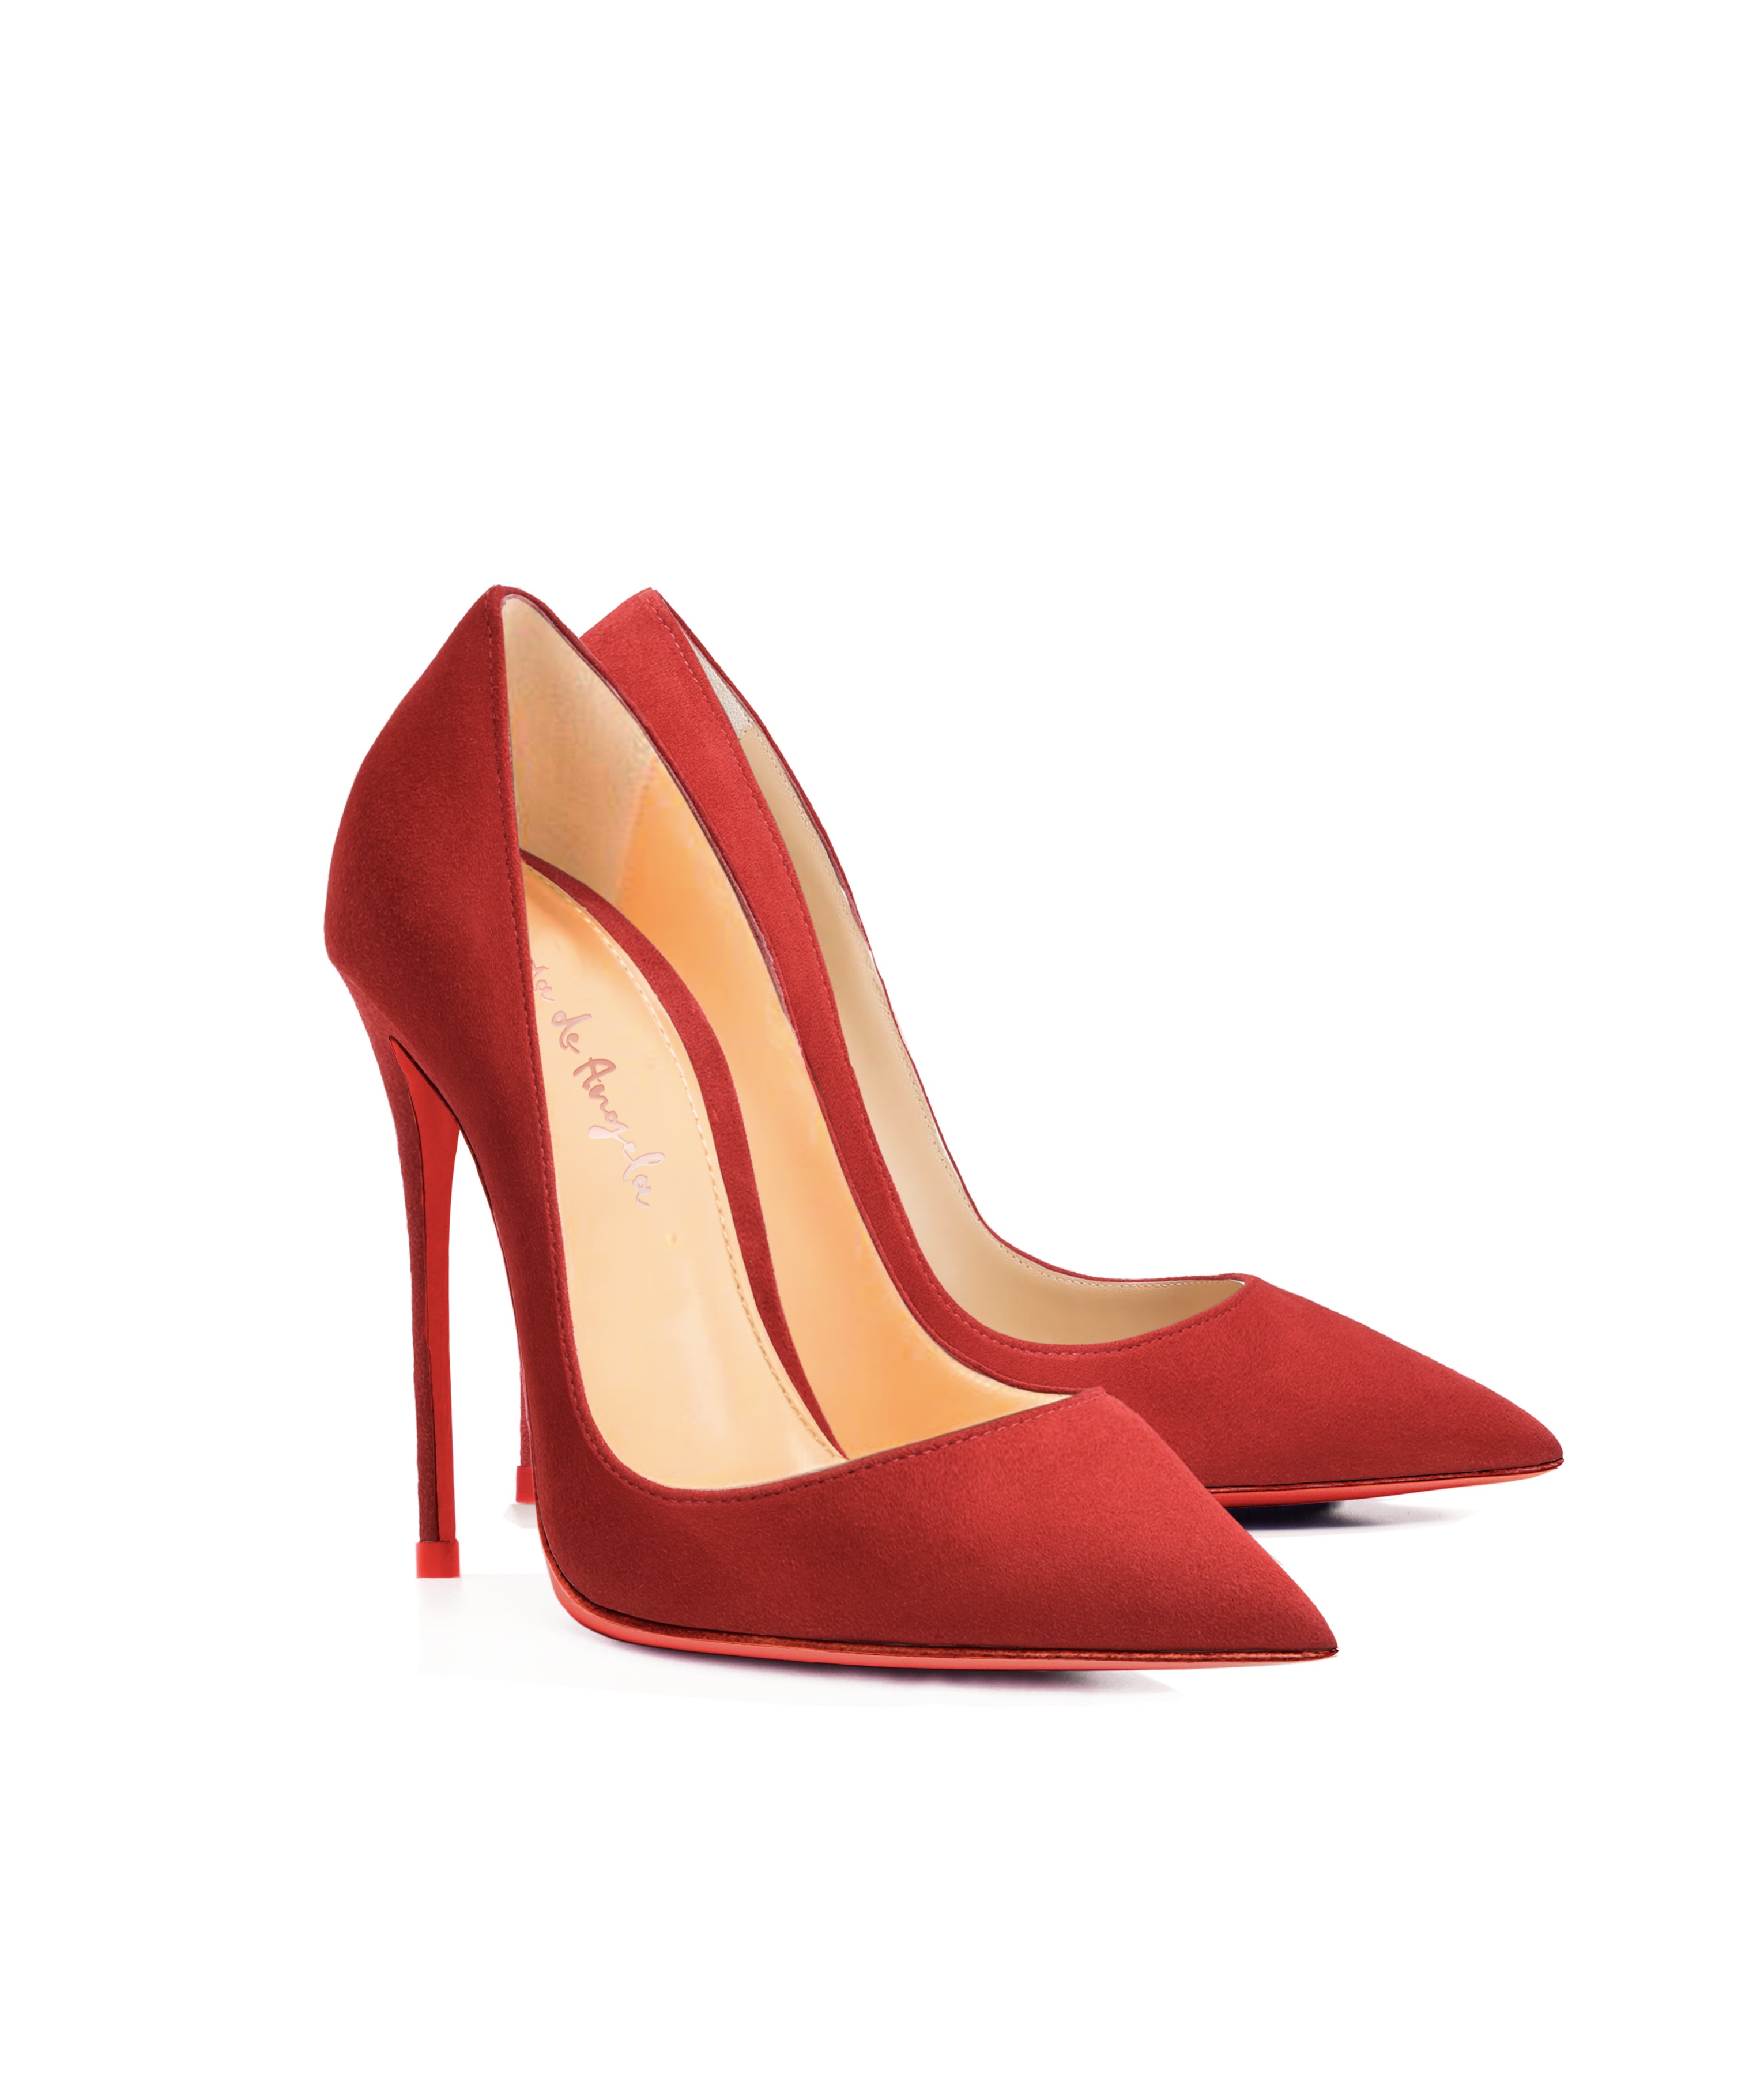 Adhara Red Suede · Charlotte Luxury High Heels Shoes · Ada de Angela ...